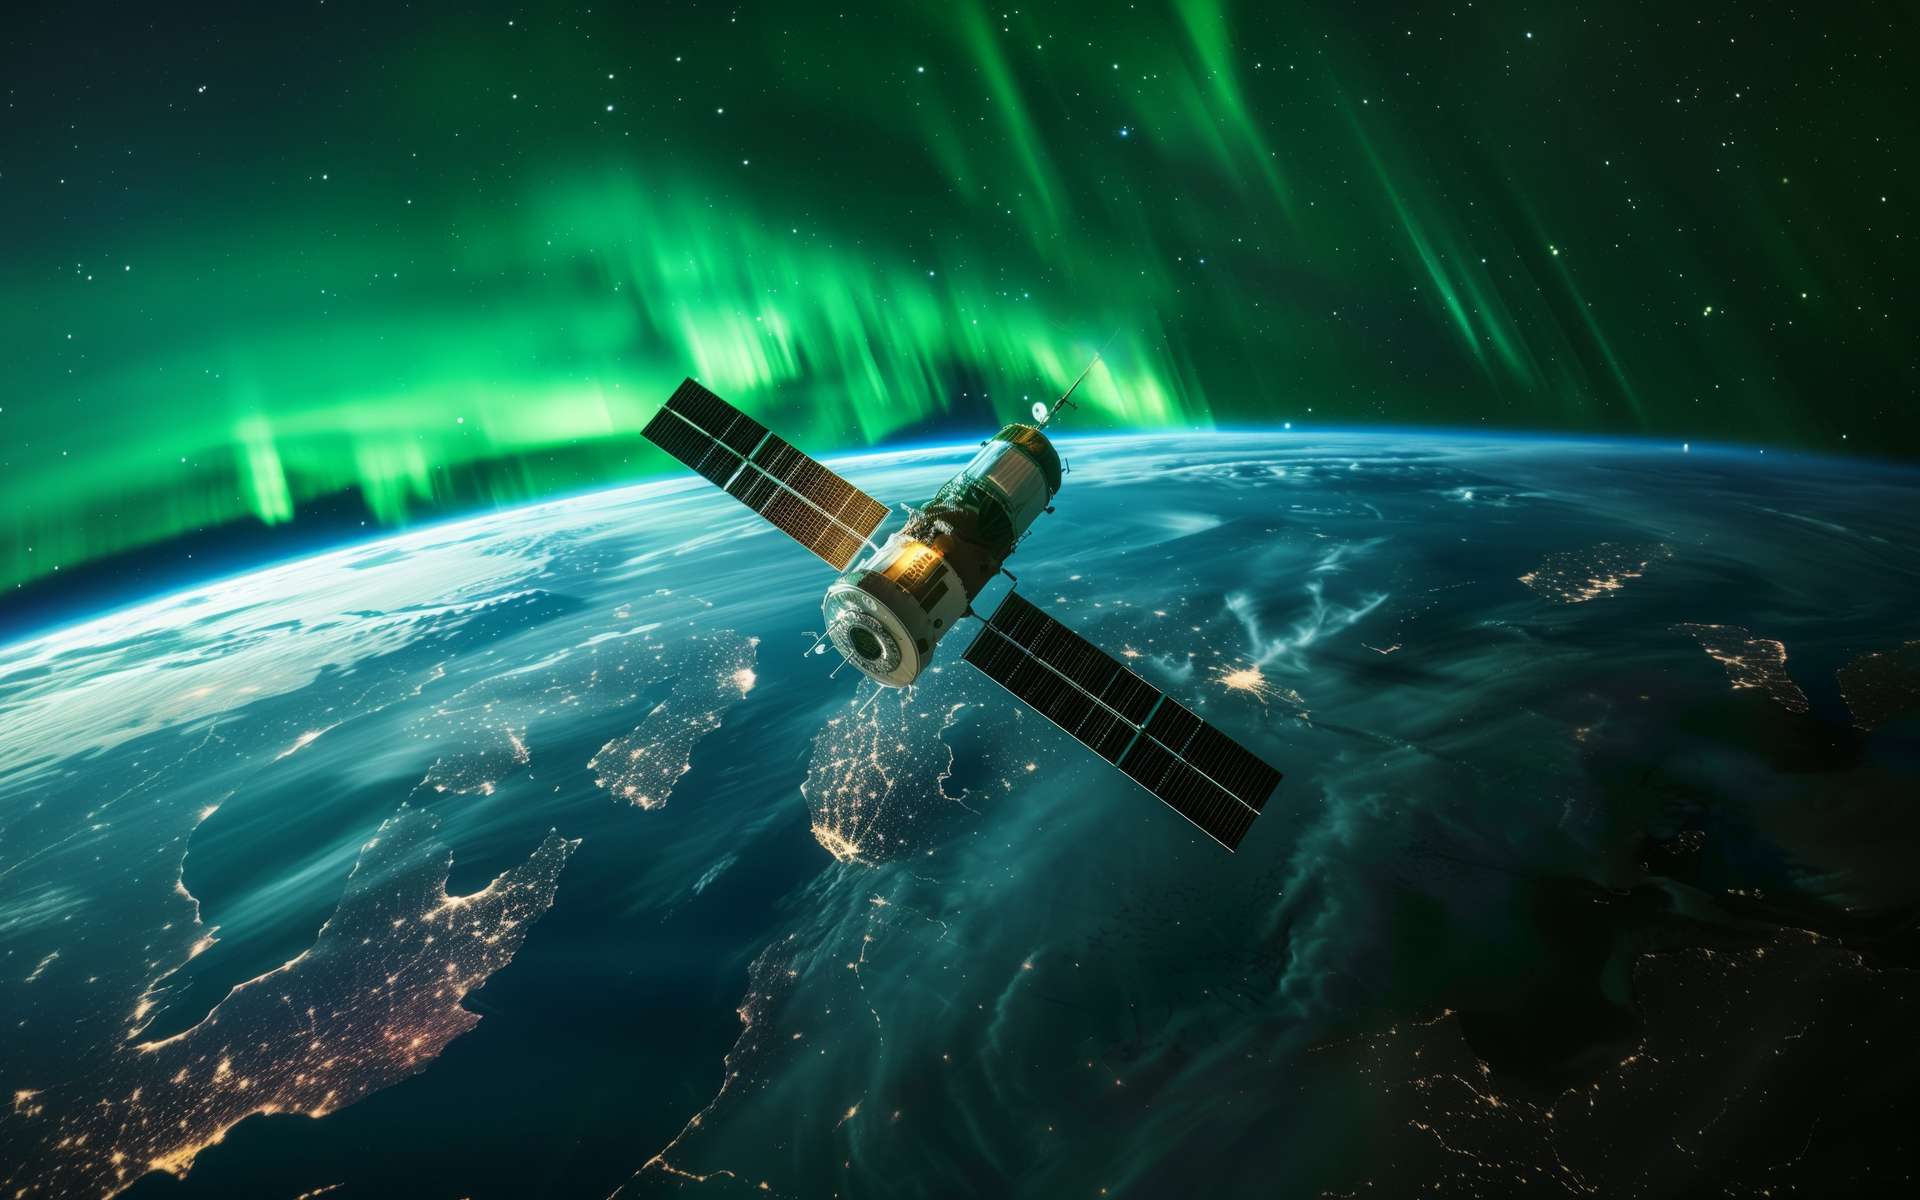 Voici la Terre couronnée d'aurores boréales vue de l'espace le 11 mai